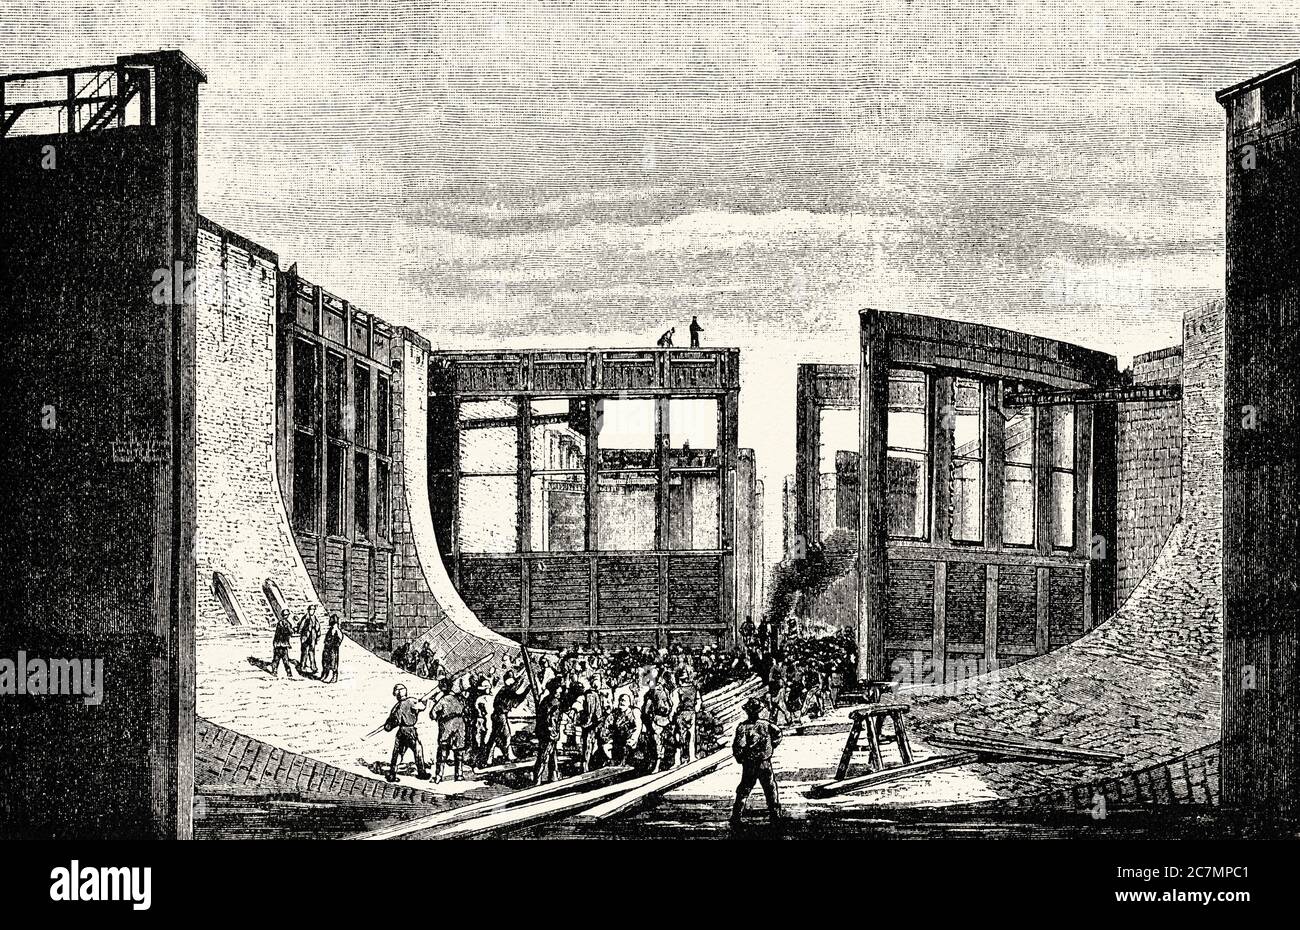 Construction de la porte de la sluice à Holtenau en 1895, canal de Kiel, Kiel, Schleswig-Holstein, Allemagne, Europe. De la Ilustracion Española y Americana 1895 Banque D'Images